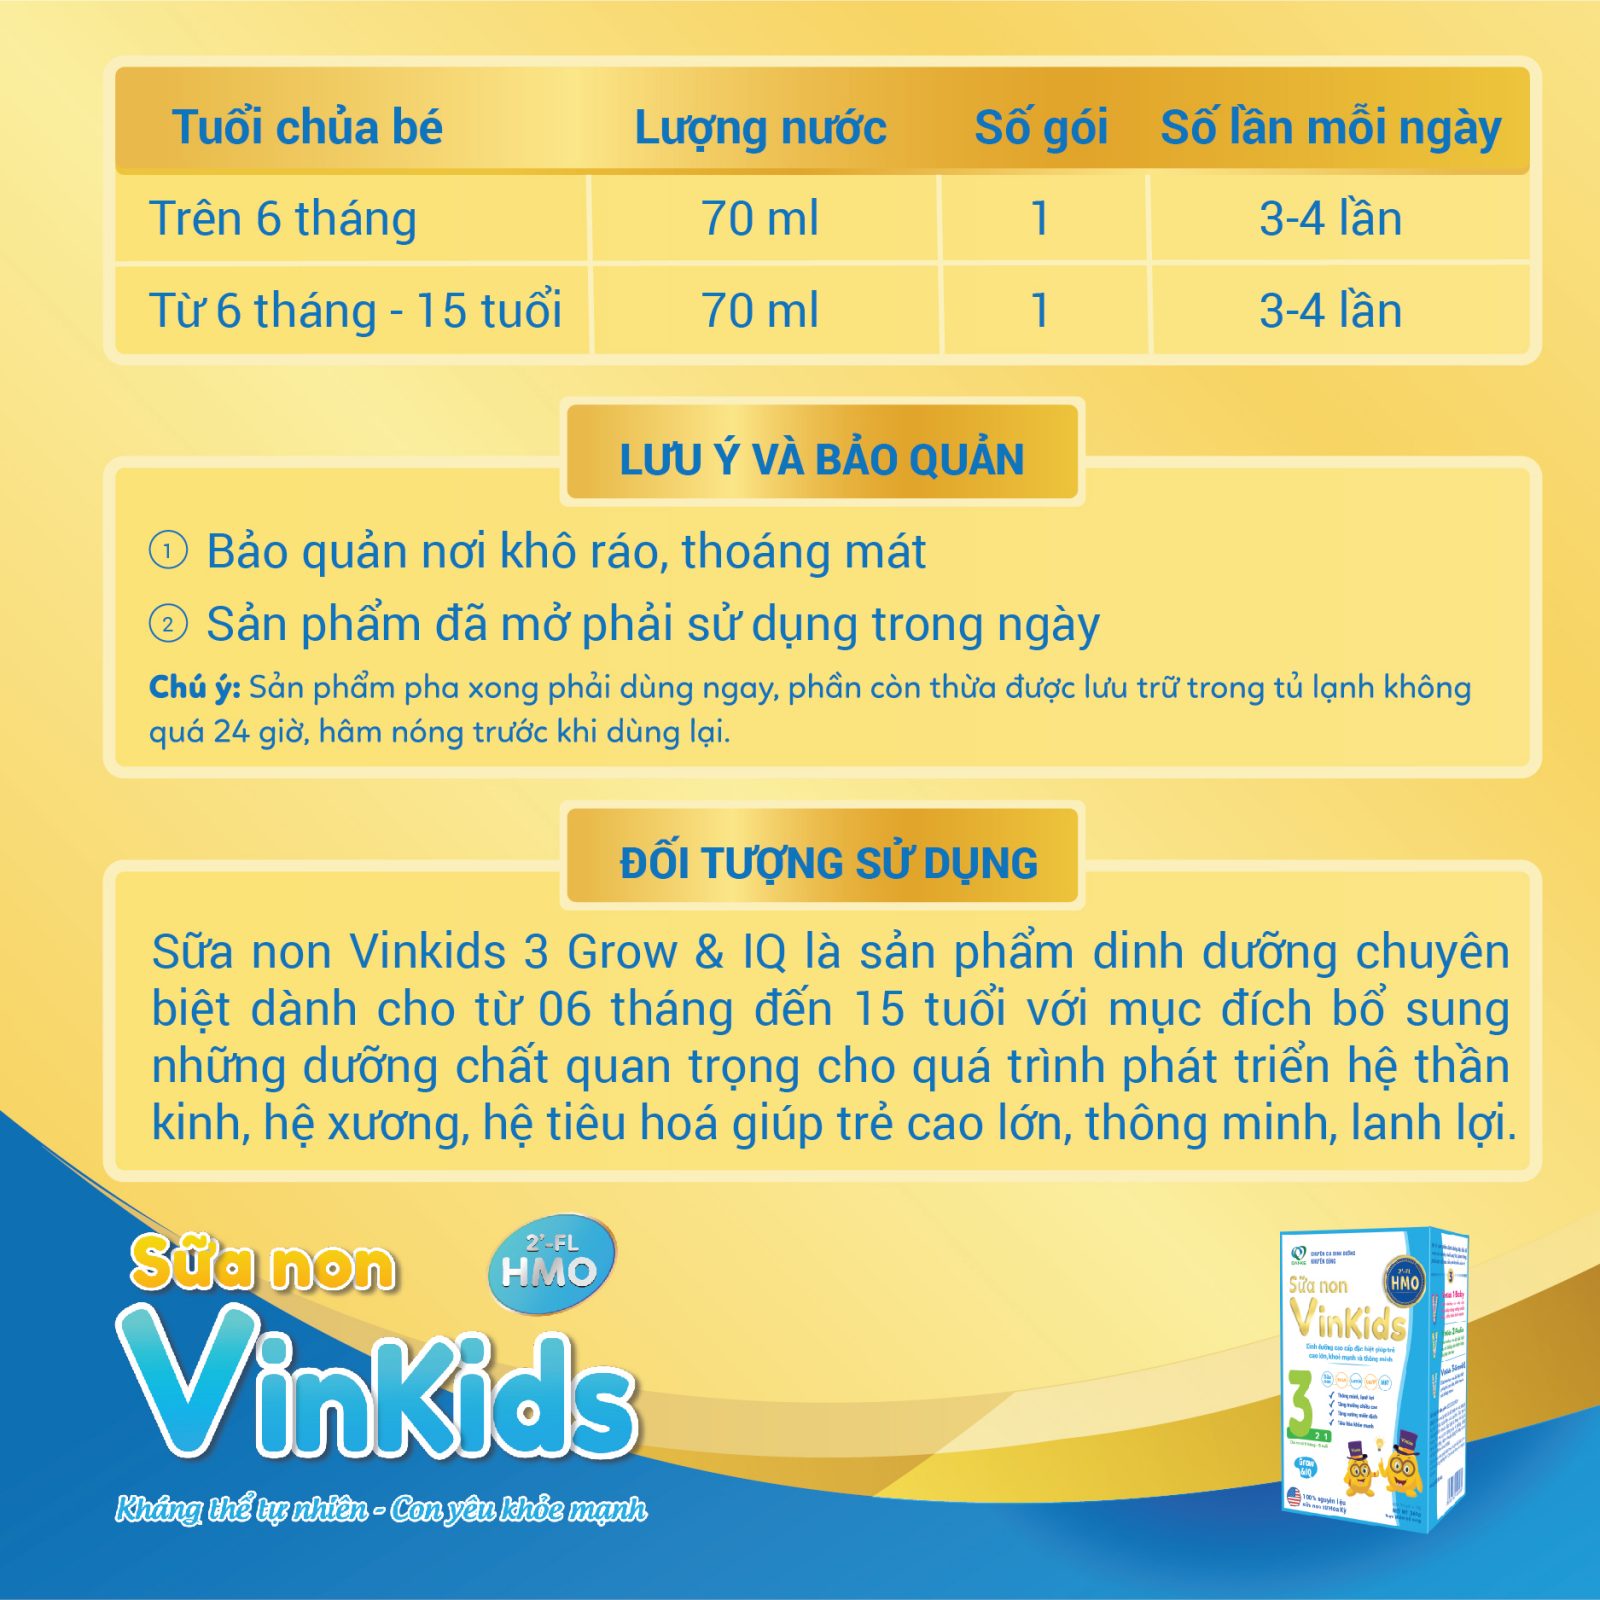 Hướng dẫn sử dụng sữa non Vinkids số 3 Grow & Iq